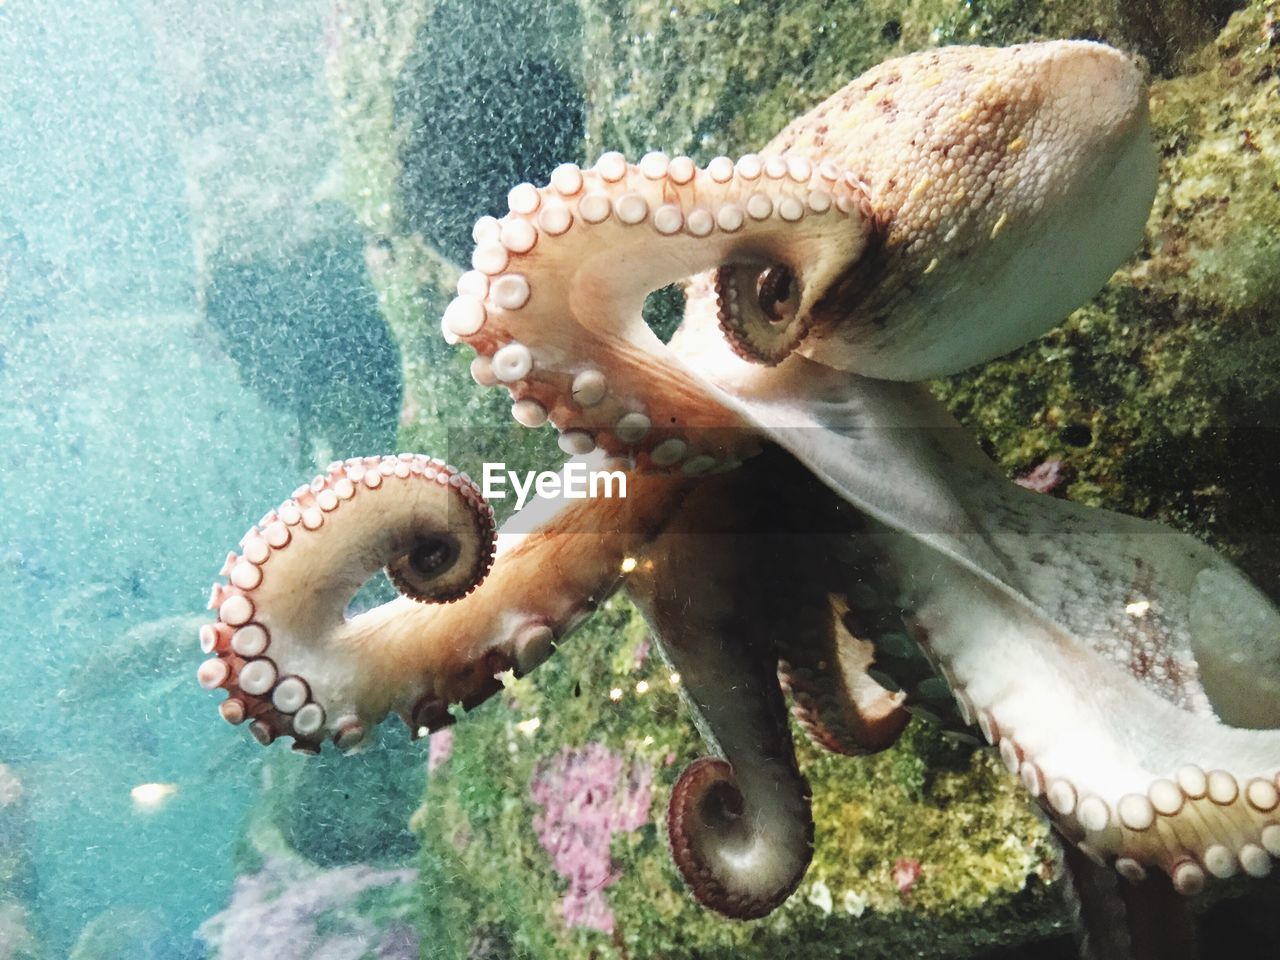 View of octopus underwater